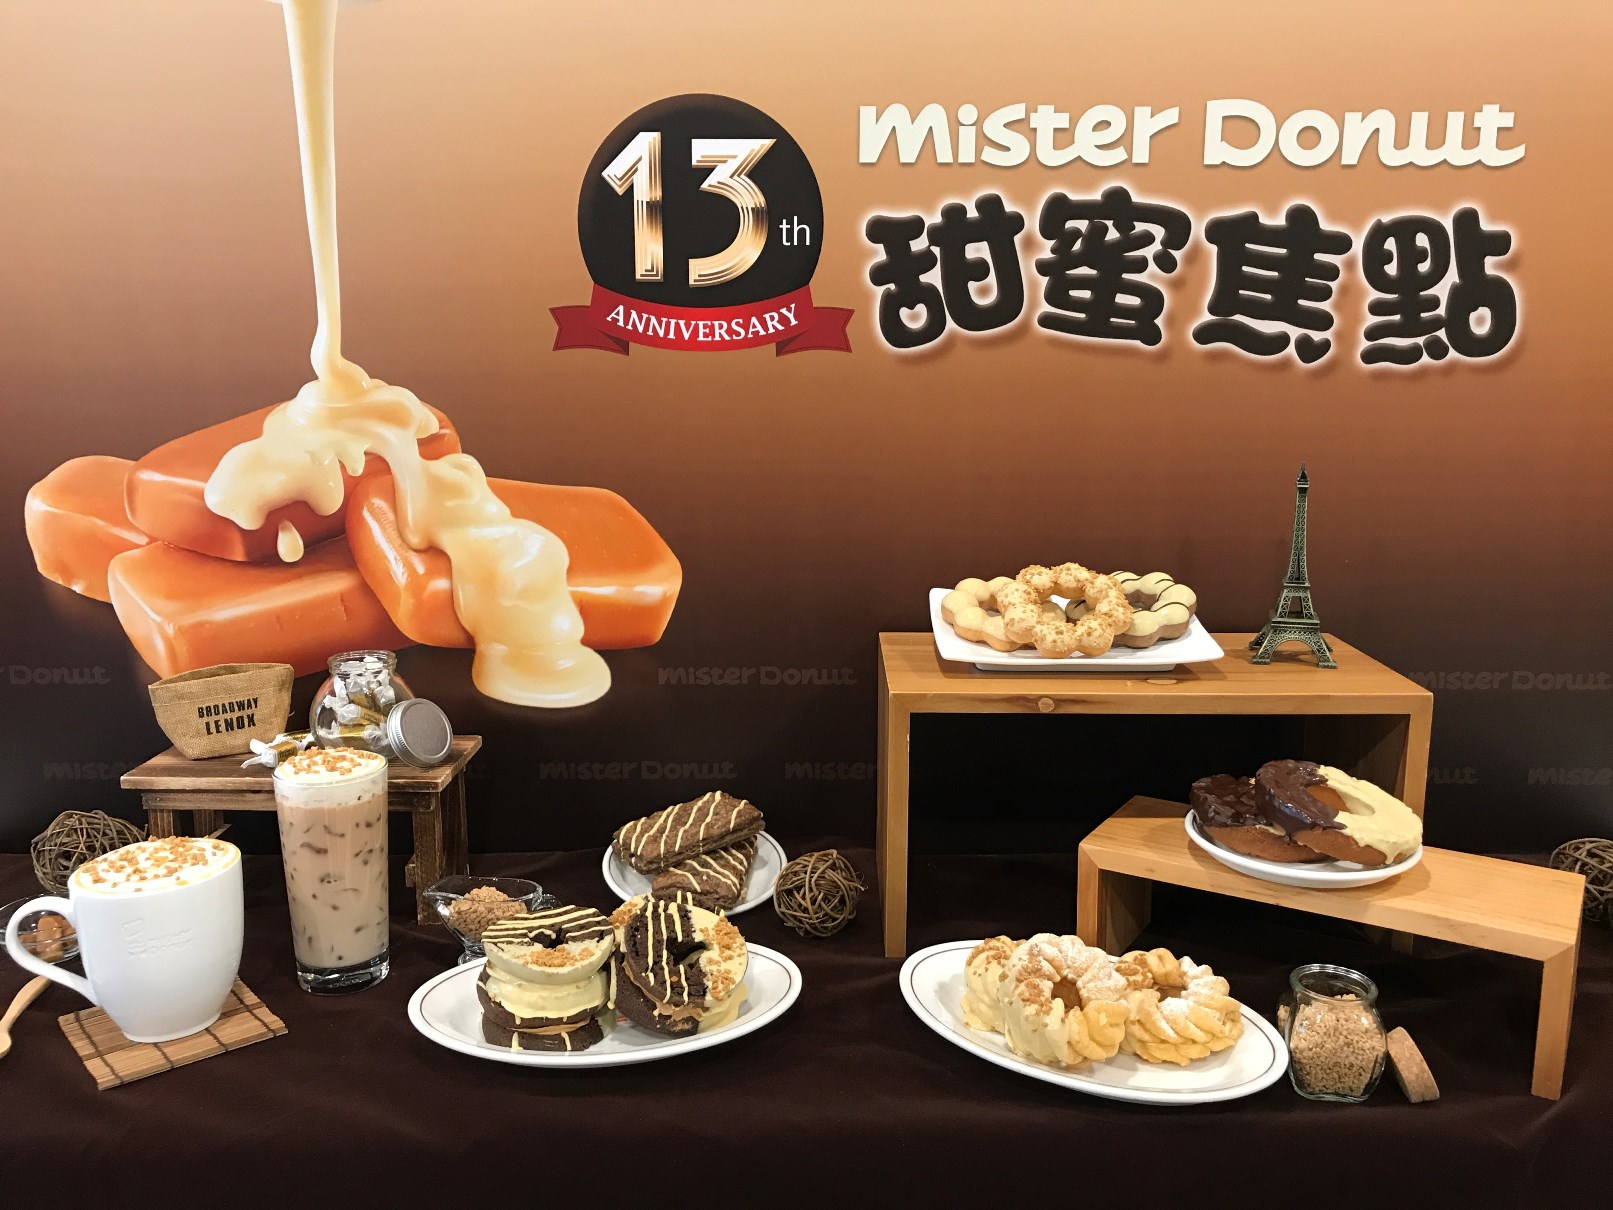 Mister Donut 推出「塩焦糖主題季」，以焦糖巧克力為基底，加入塩提出焦糖濃郁風味，融合成濃郁不膩口的美味